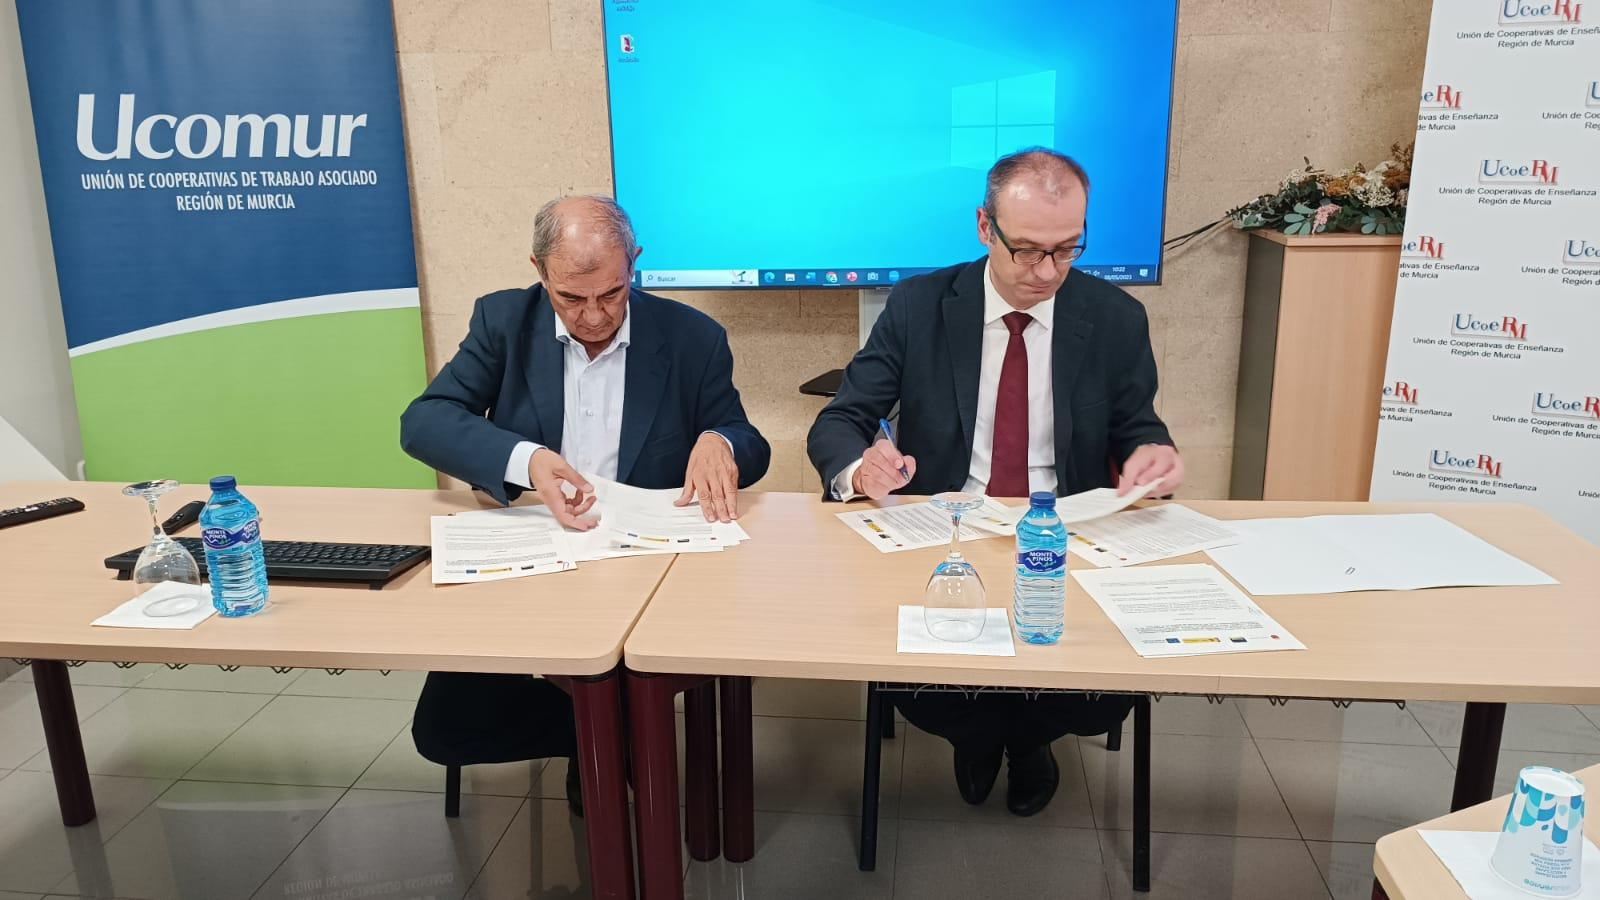 Educación y Ucomur firman un acuerdo para la promoción de la Formación Profesional Dual
 